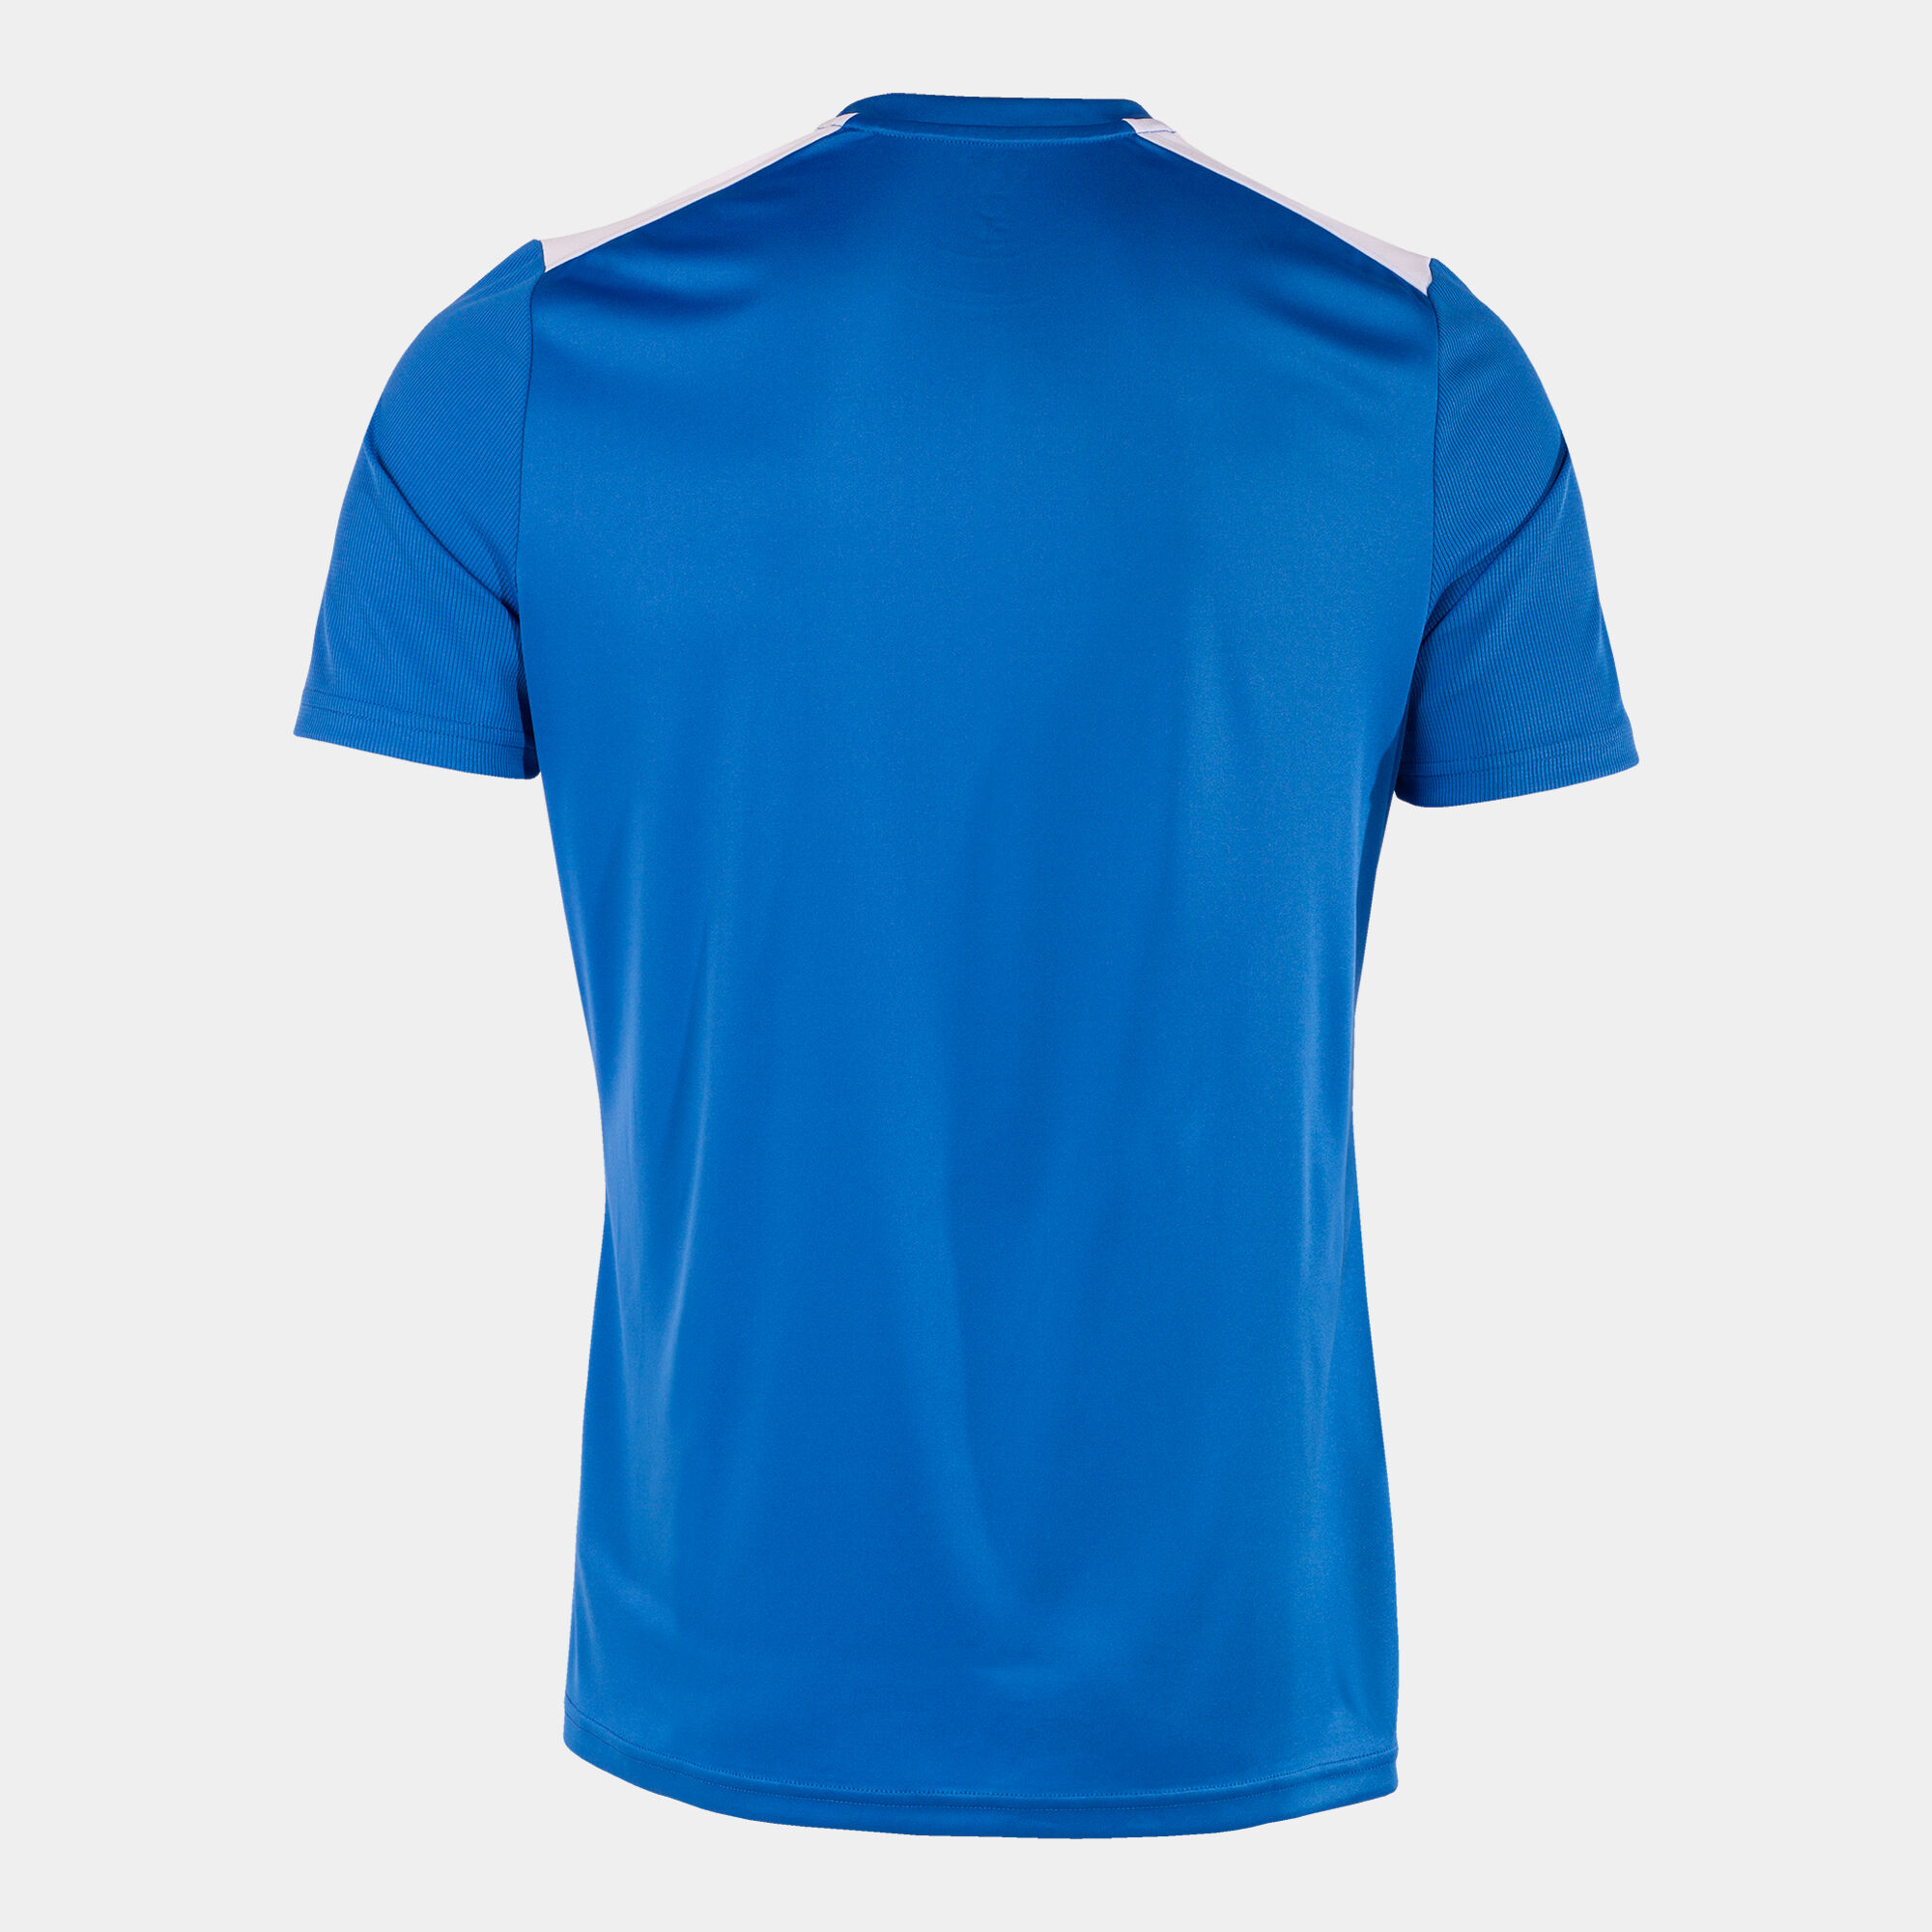 Koszulka z krótkim rękawem mężczyźni Championship VII niebieski royal bialy